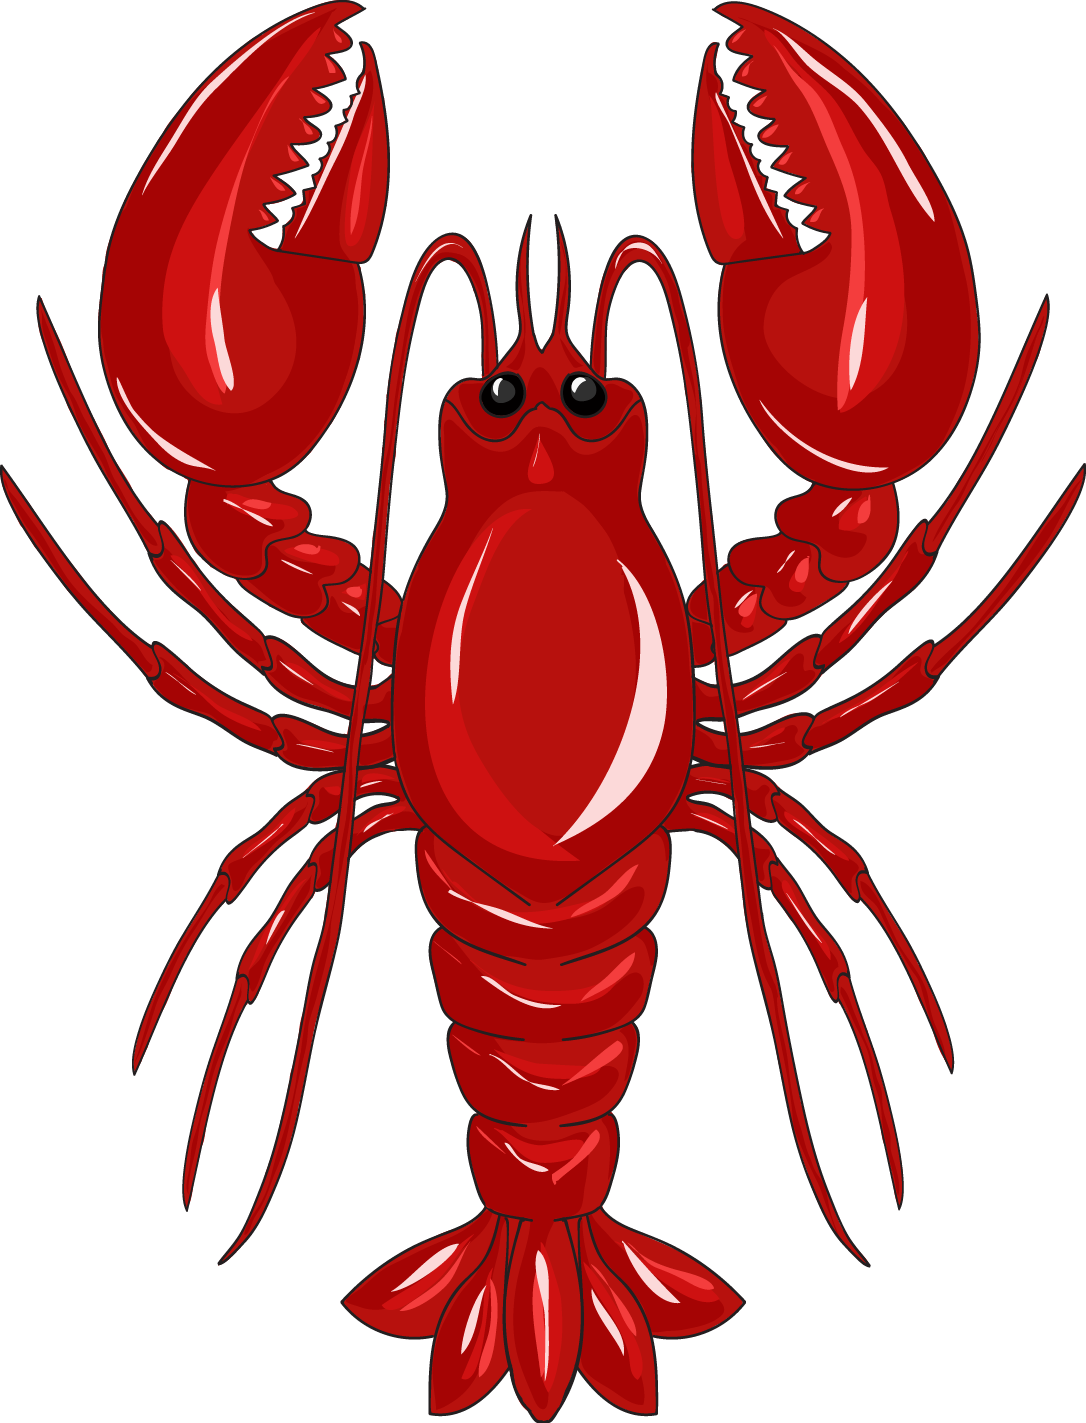 Red Lobster Illustration.png